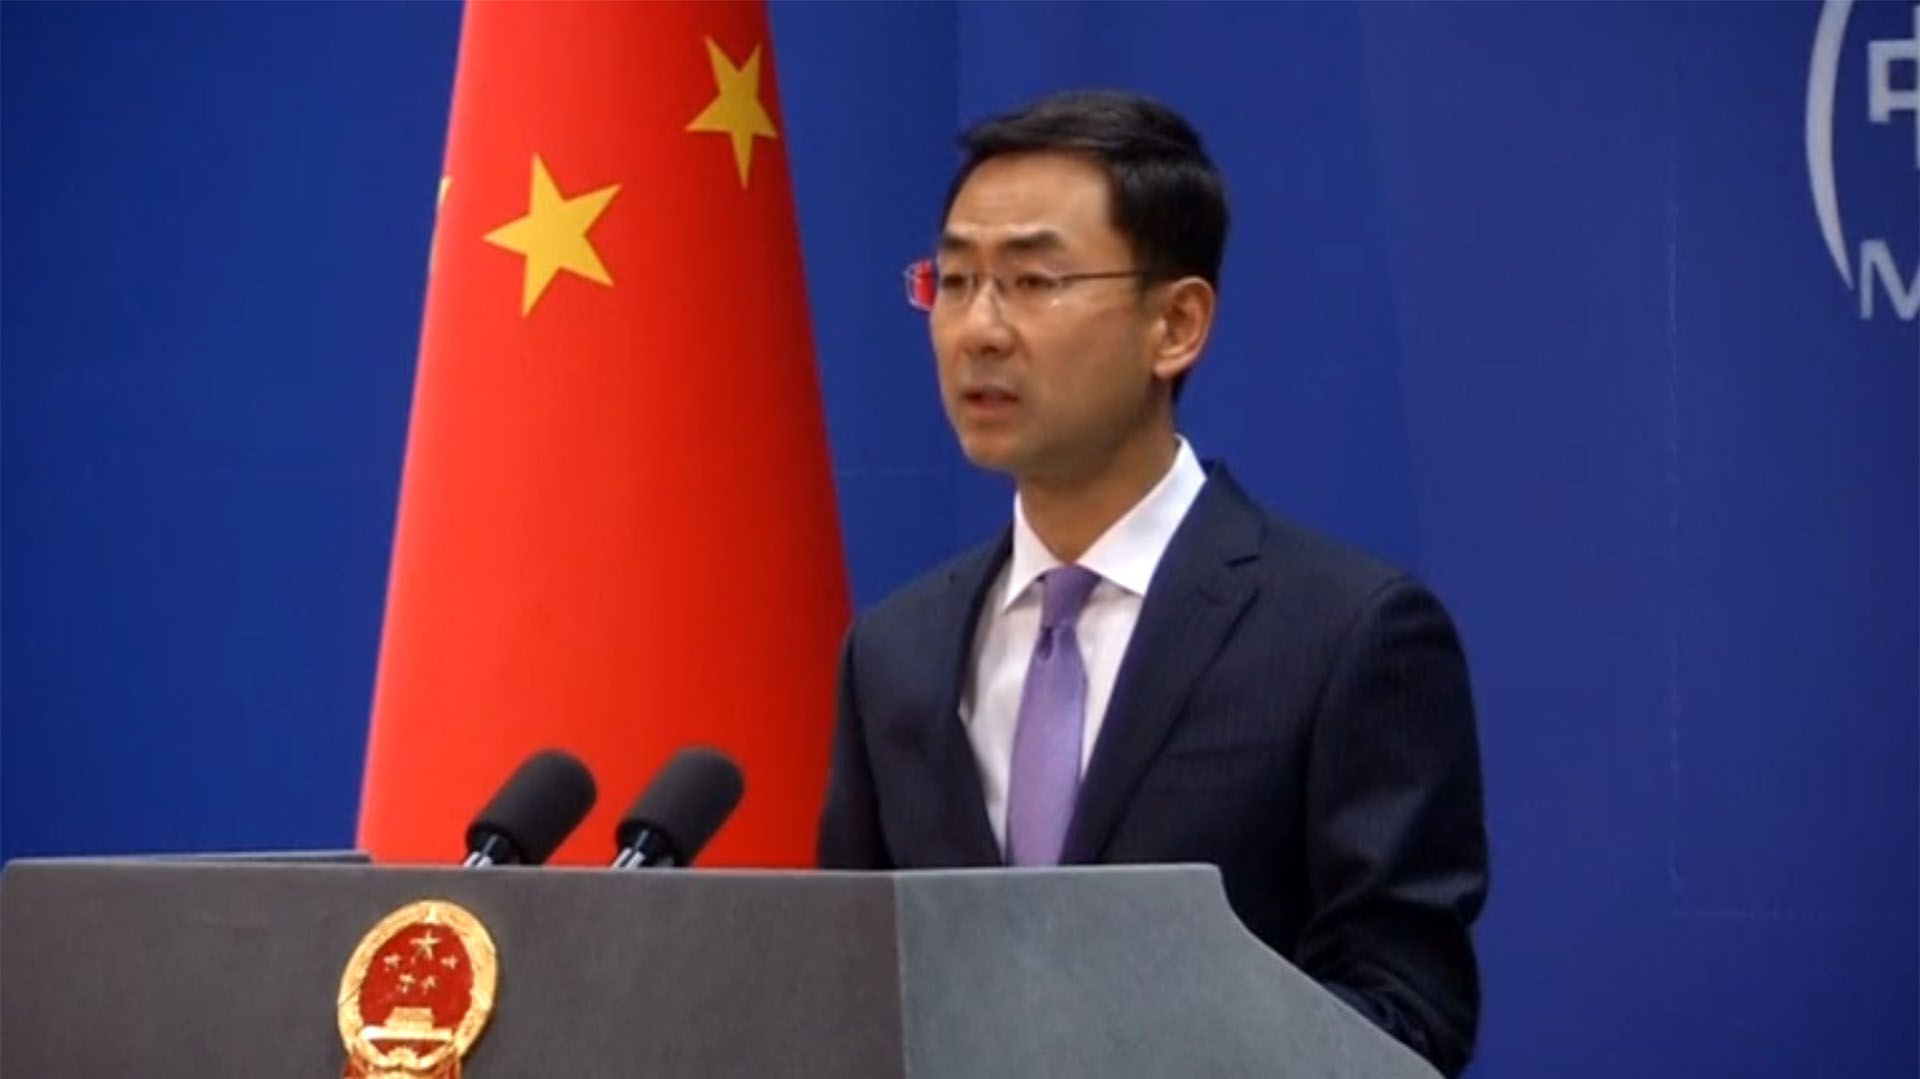 Geng Shuang, portavoz del ministerio relaciones exteriores de China, afirmó que “algunos medios” extranjeros están tratando de “exagerar el tema de Xinjiang” para “difamar” la campaña impulsada por Pekín de “antiterrorismo y desradicalización”. (Reuters)